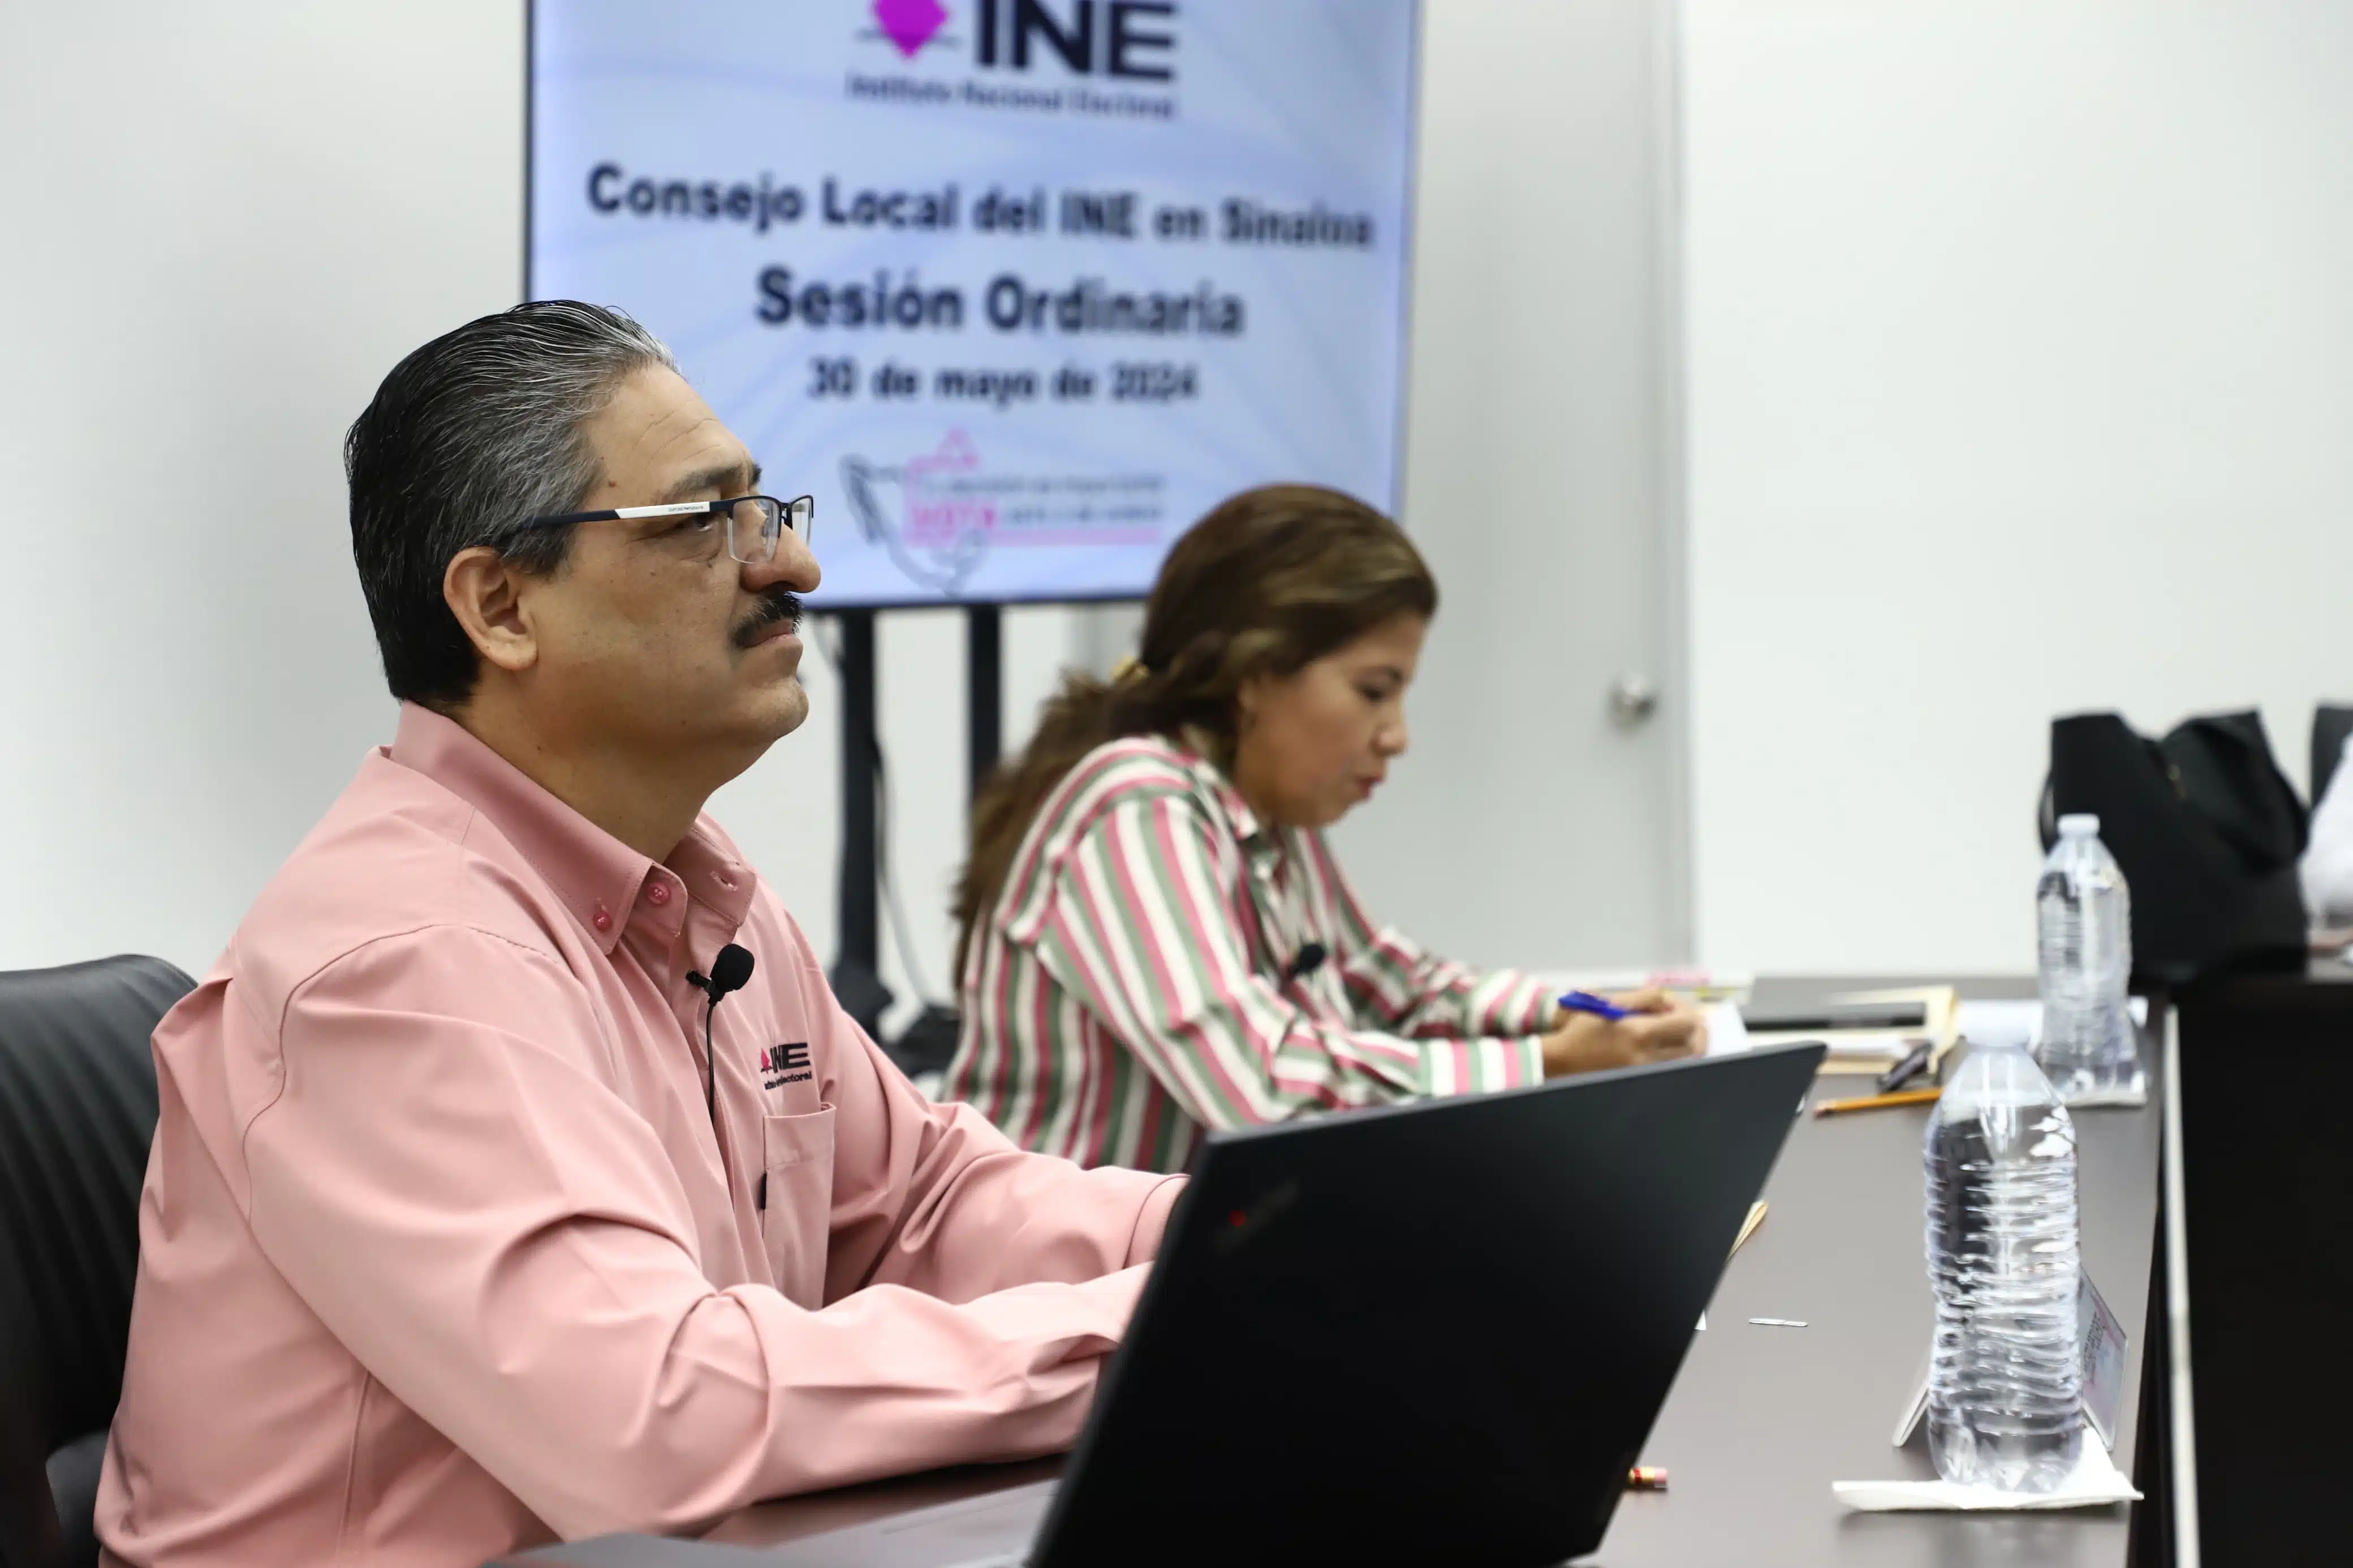 vocal ejecutivo del INE en Sinaloa, Jorge Luis Ruelas Miranda